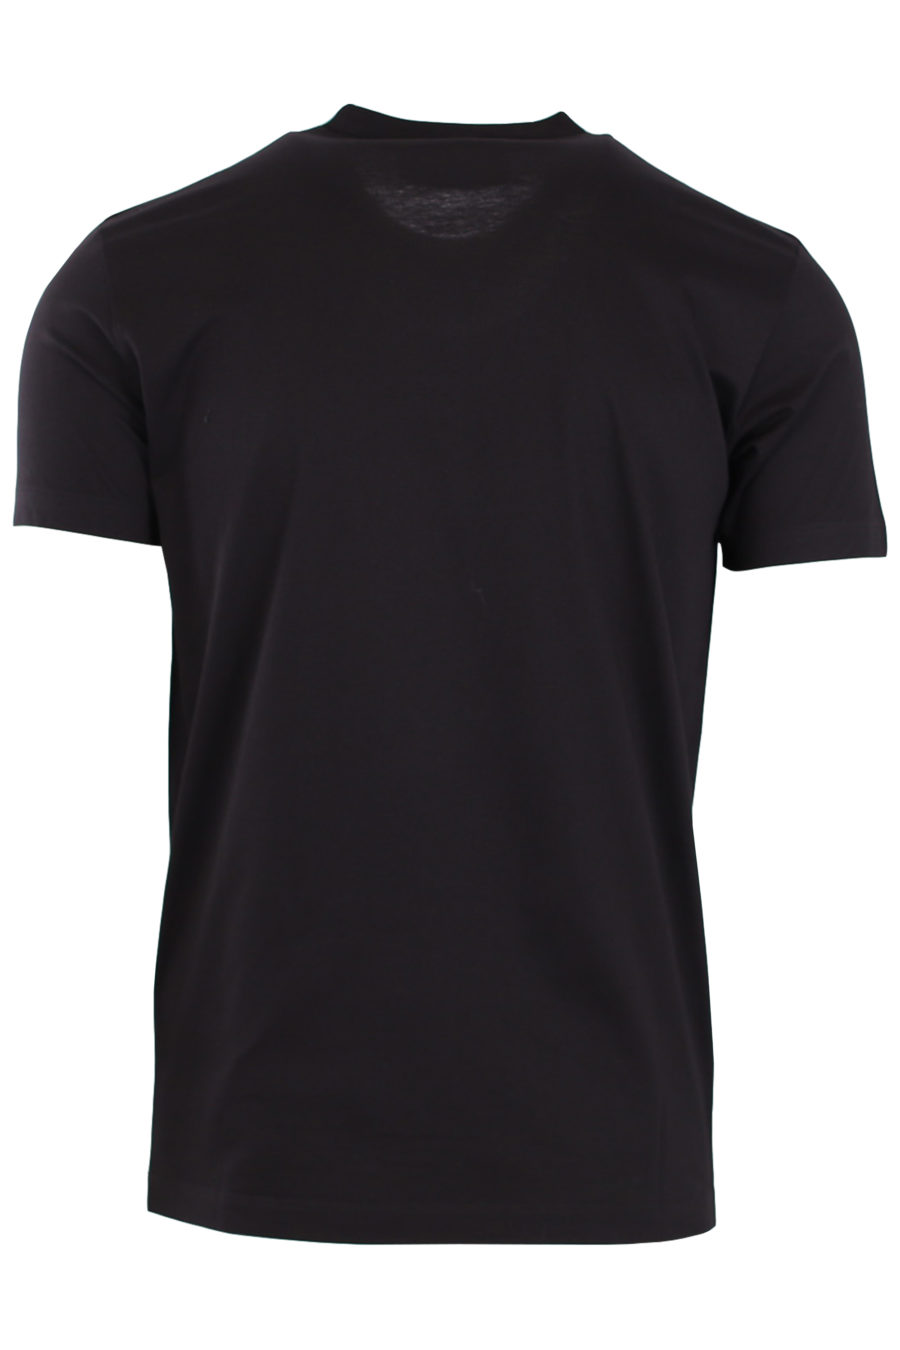 T-shirt noir avec logo et imprimé chien - 10c0e061418df63043f58fb249c5a5de3e228c51